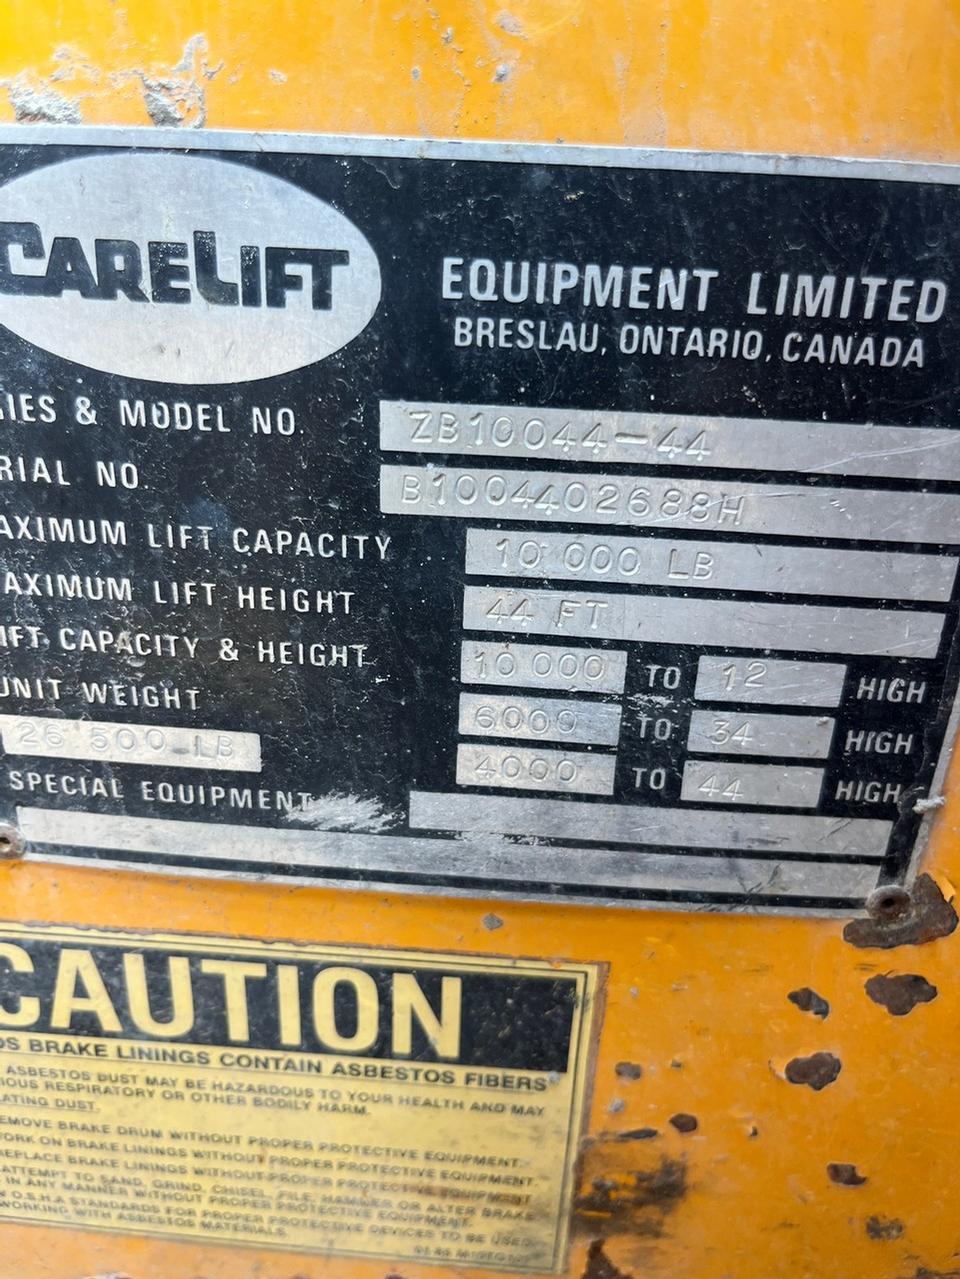 Carelift ZB10044-44 Telehandler